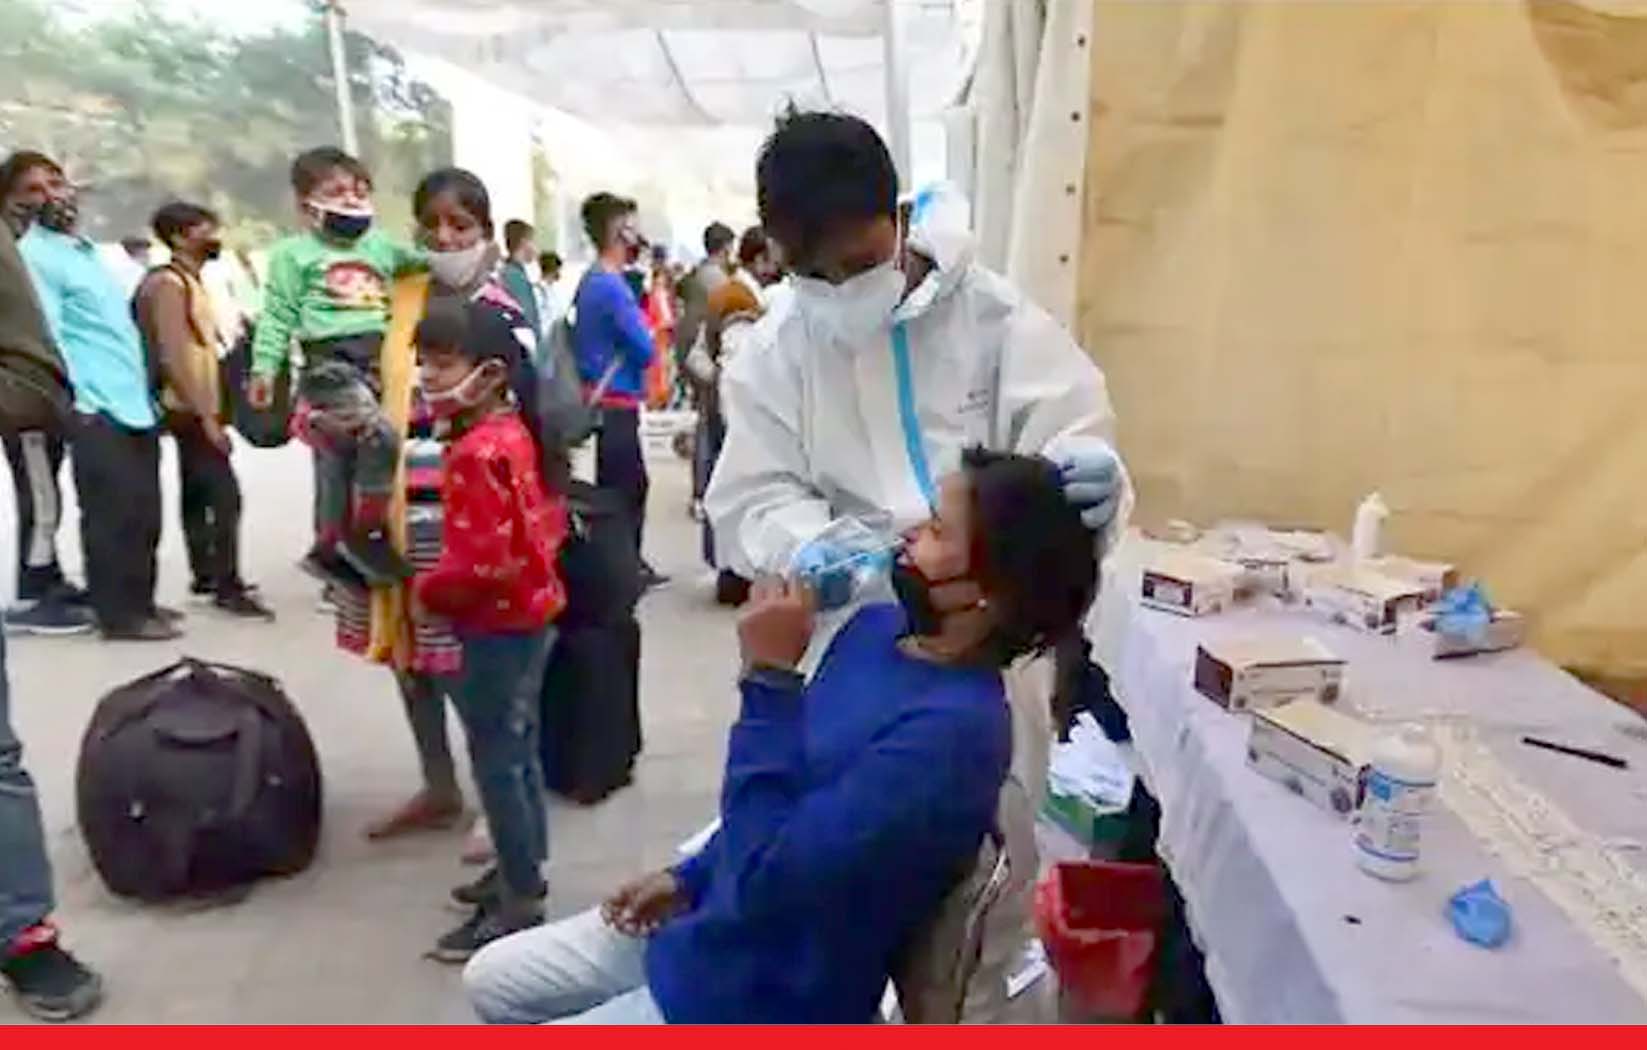 कोविड टेस्ट कराने के लिए कहने पर भड़का युवक, डिस्पेंसरी में दिल्ली सिविल डिफेंस कर्मी को चाकू मारा